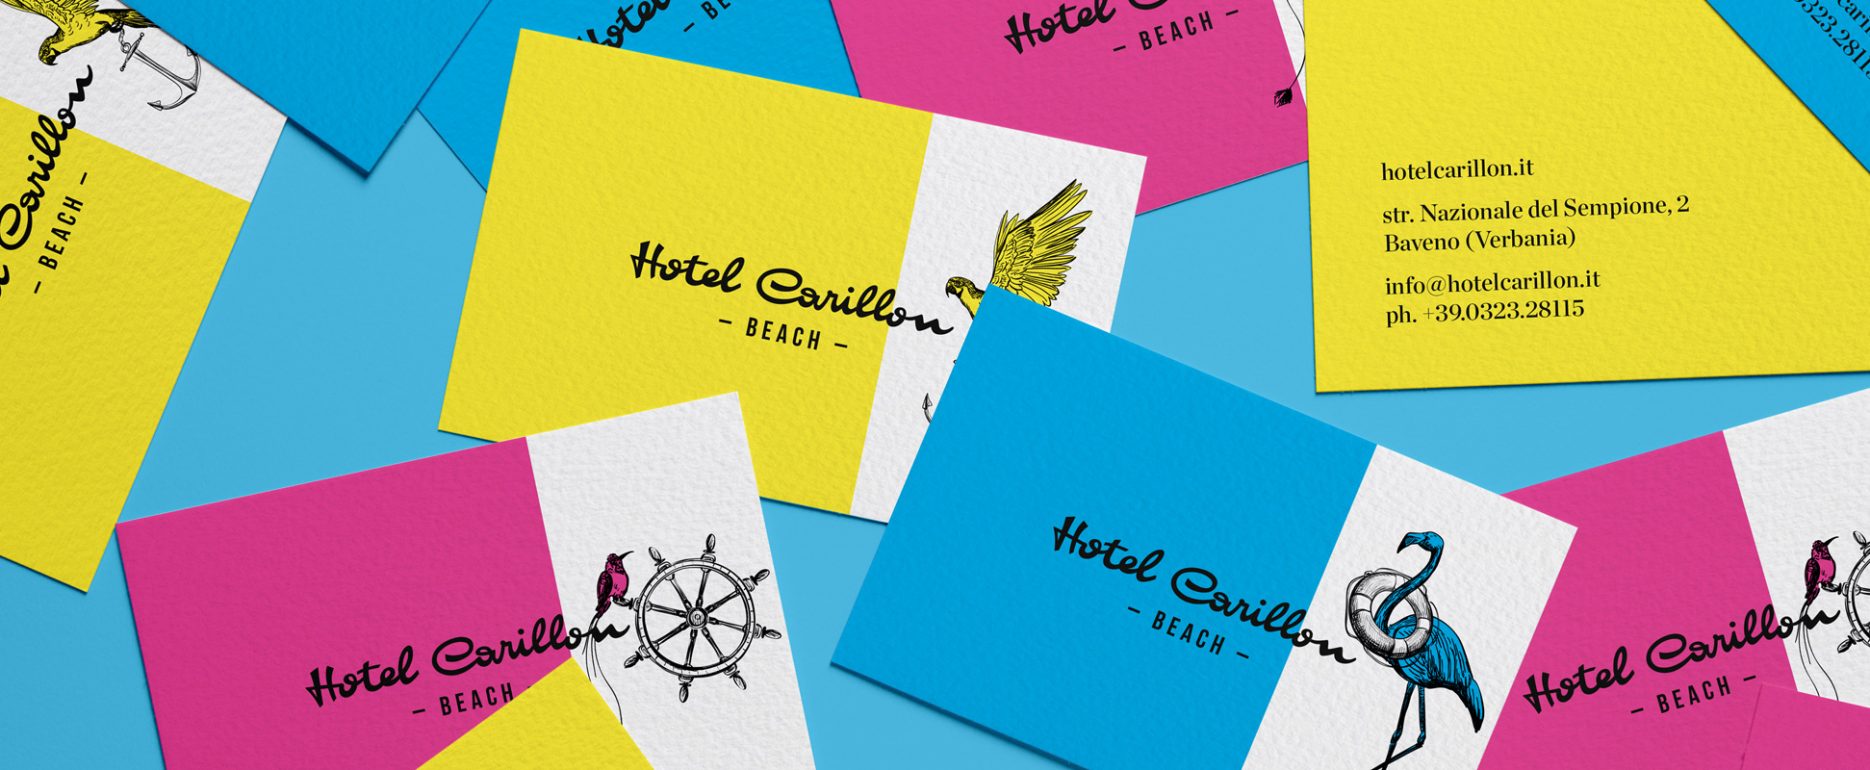 Jam Area case history Hotel Carillon a Baveno sul Lago Maggiore, graphic design card